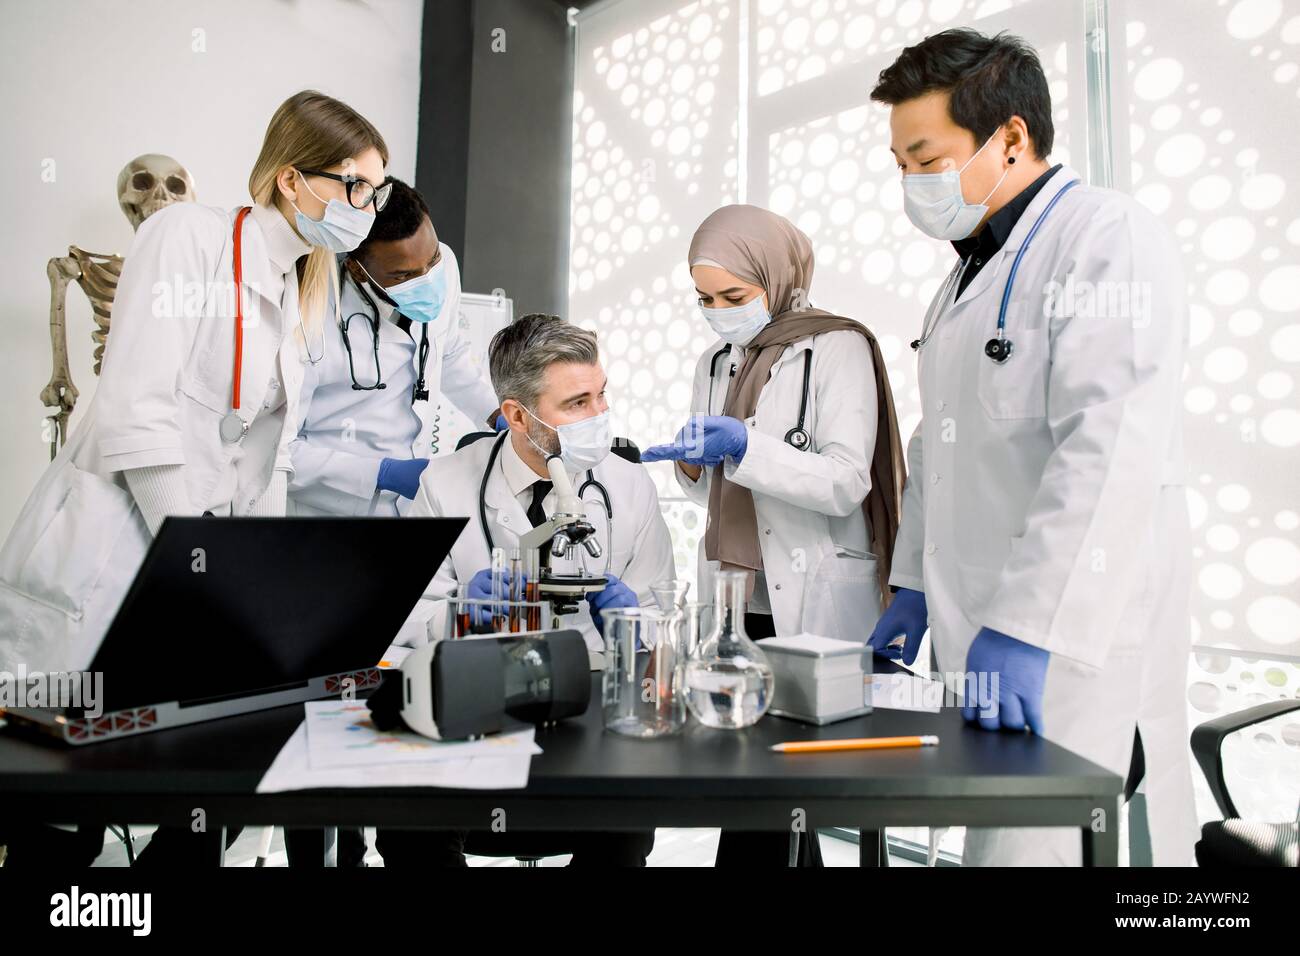 scienza, chimica, tecnologia, biologia e medicina. Team di giovani scienziati multietnici che discutono durante la ricerca scientifica Foto Stock